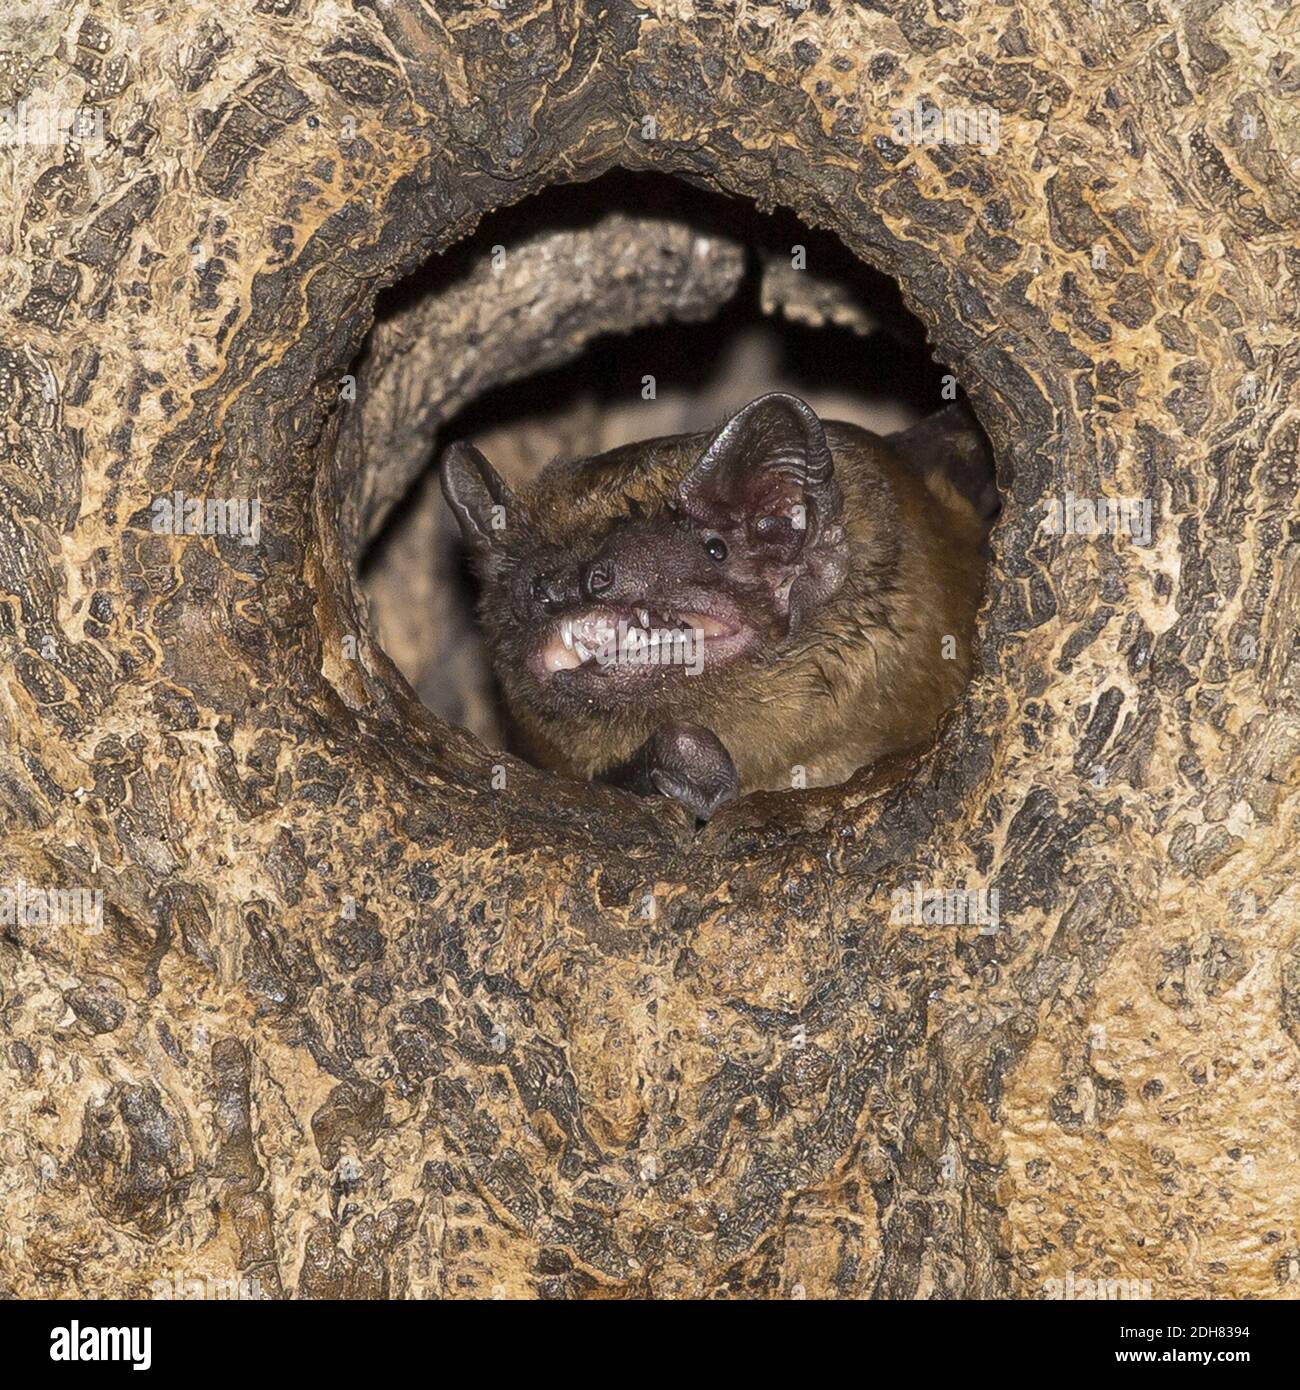 noctule (Nyctalus noctula), calling from tree hole, Netherlands Stock Photo